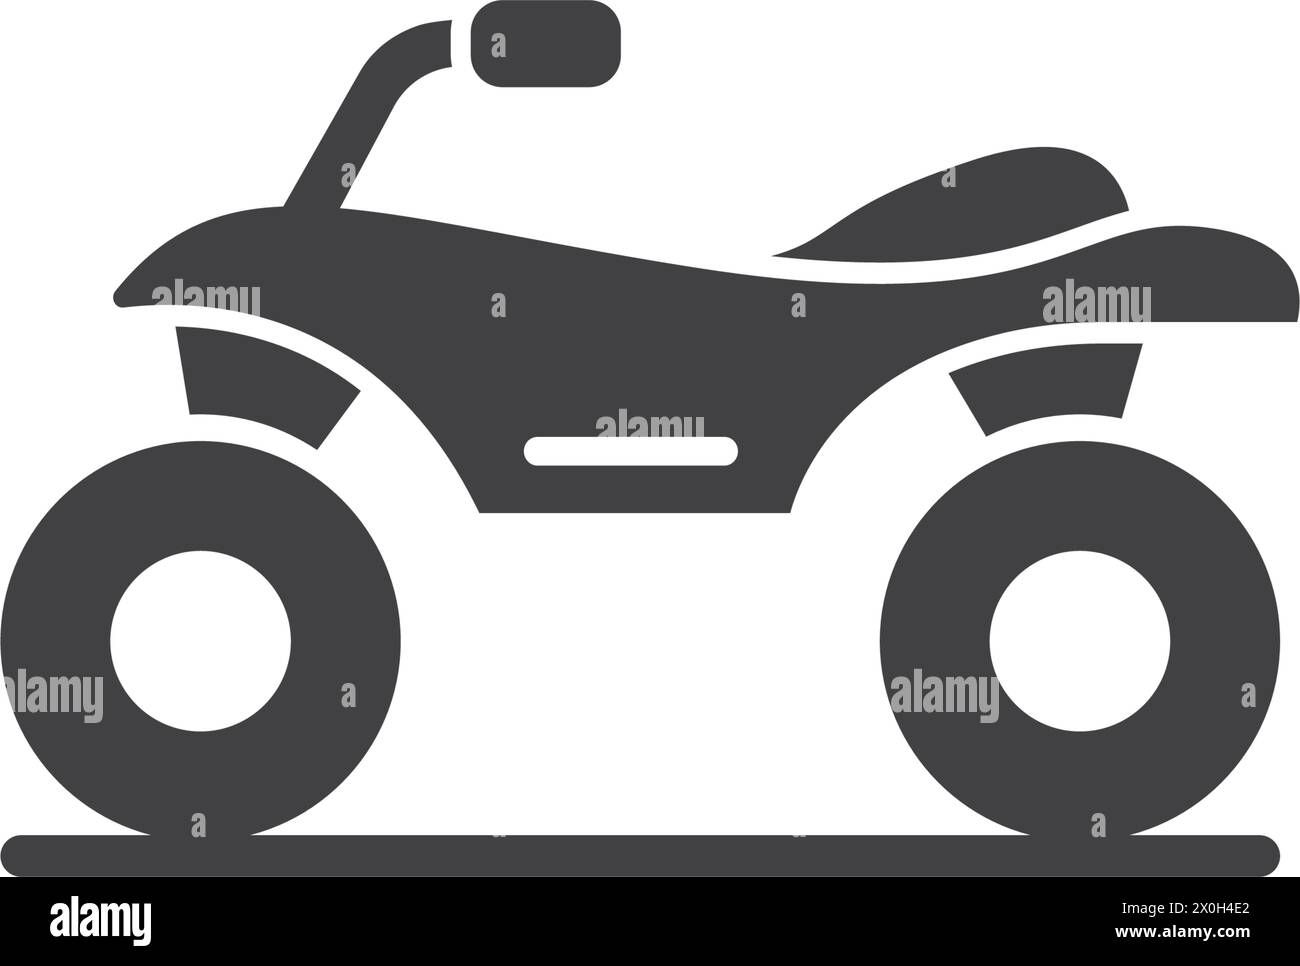 ATV-Symbol im flachen Stil. Quad-Bike-Vektor-Illustration auf isoliertem Hintergrund. Verkehrsschild Geschäftskonzept. Stock Vektor